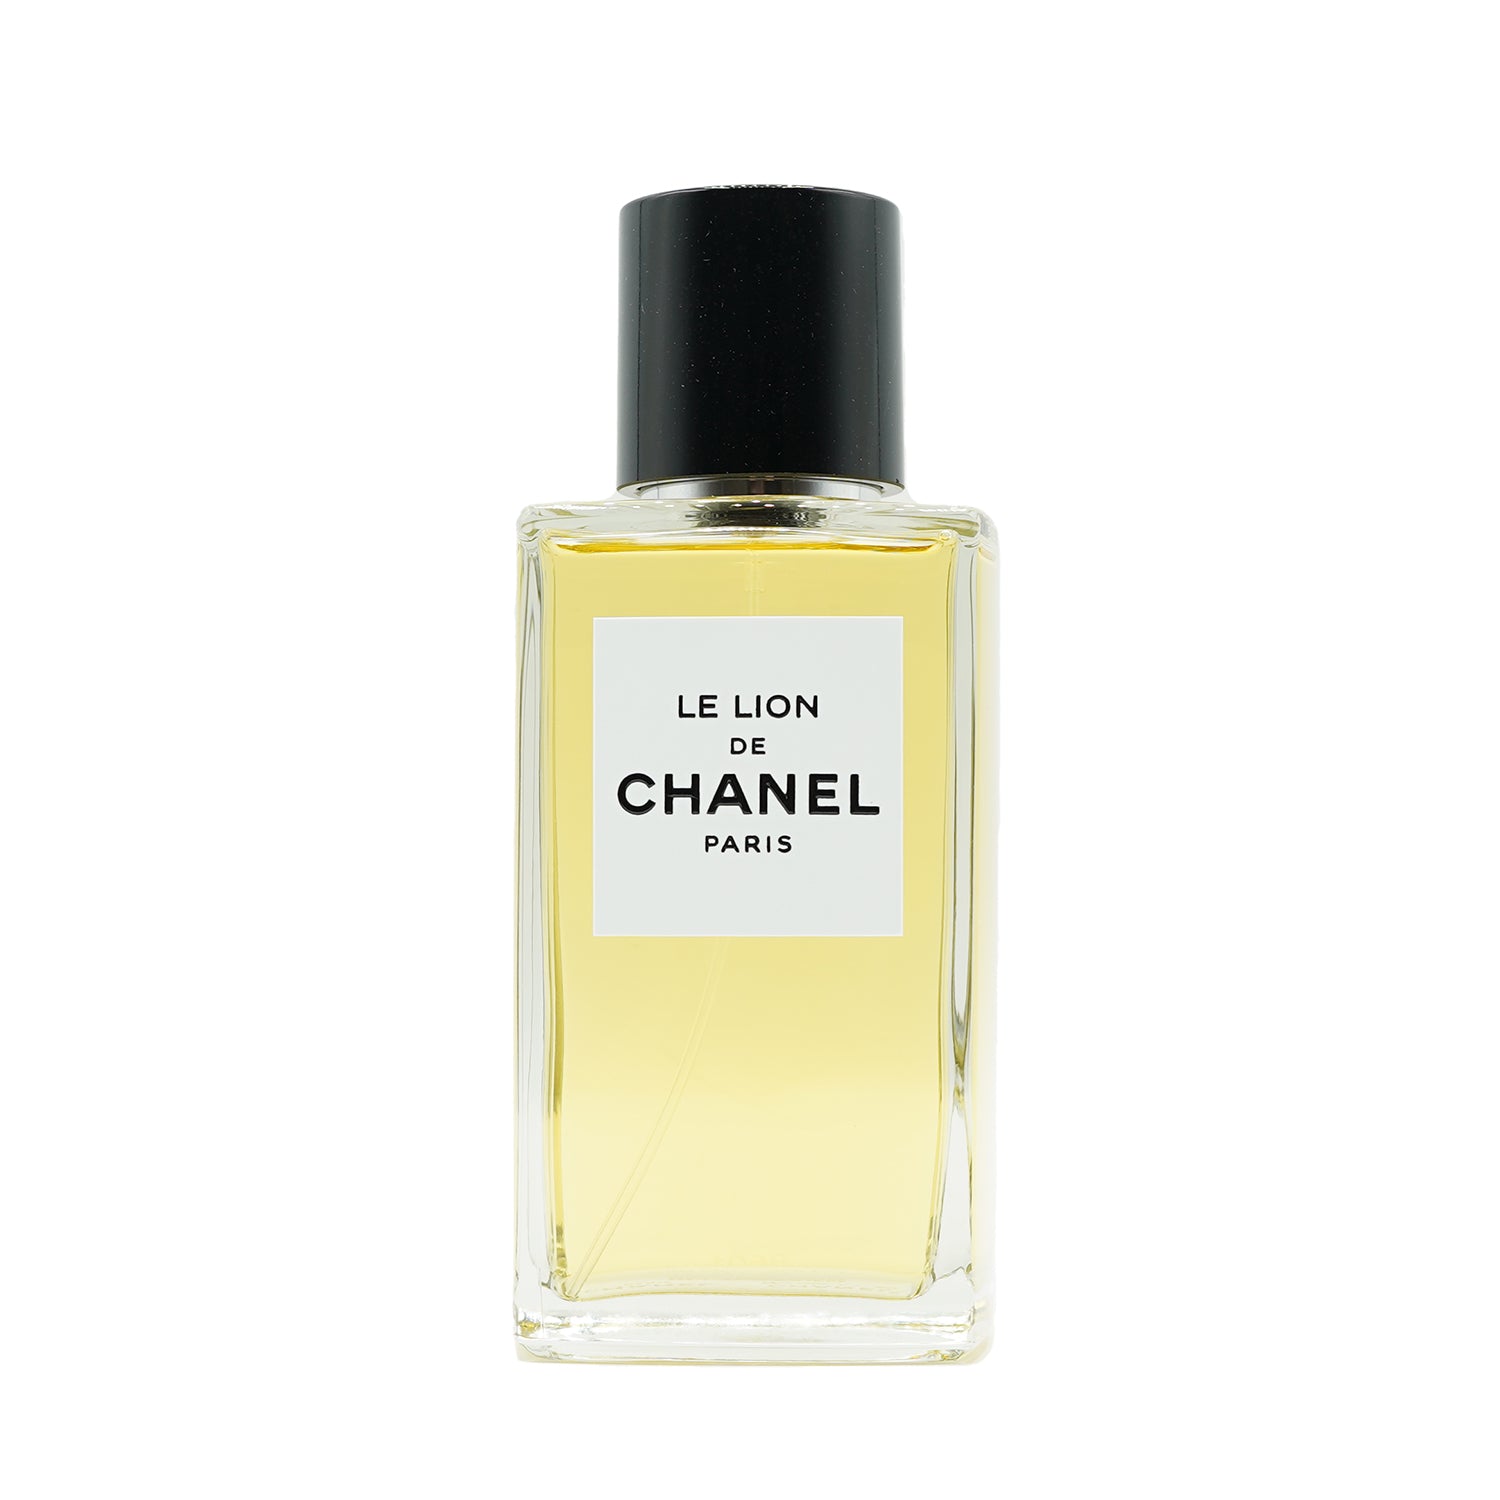 Les Exclusifs de Chanel | Le Lion de Chanel bottling 